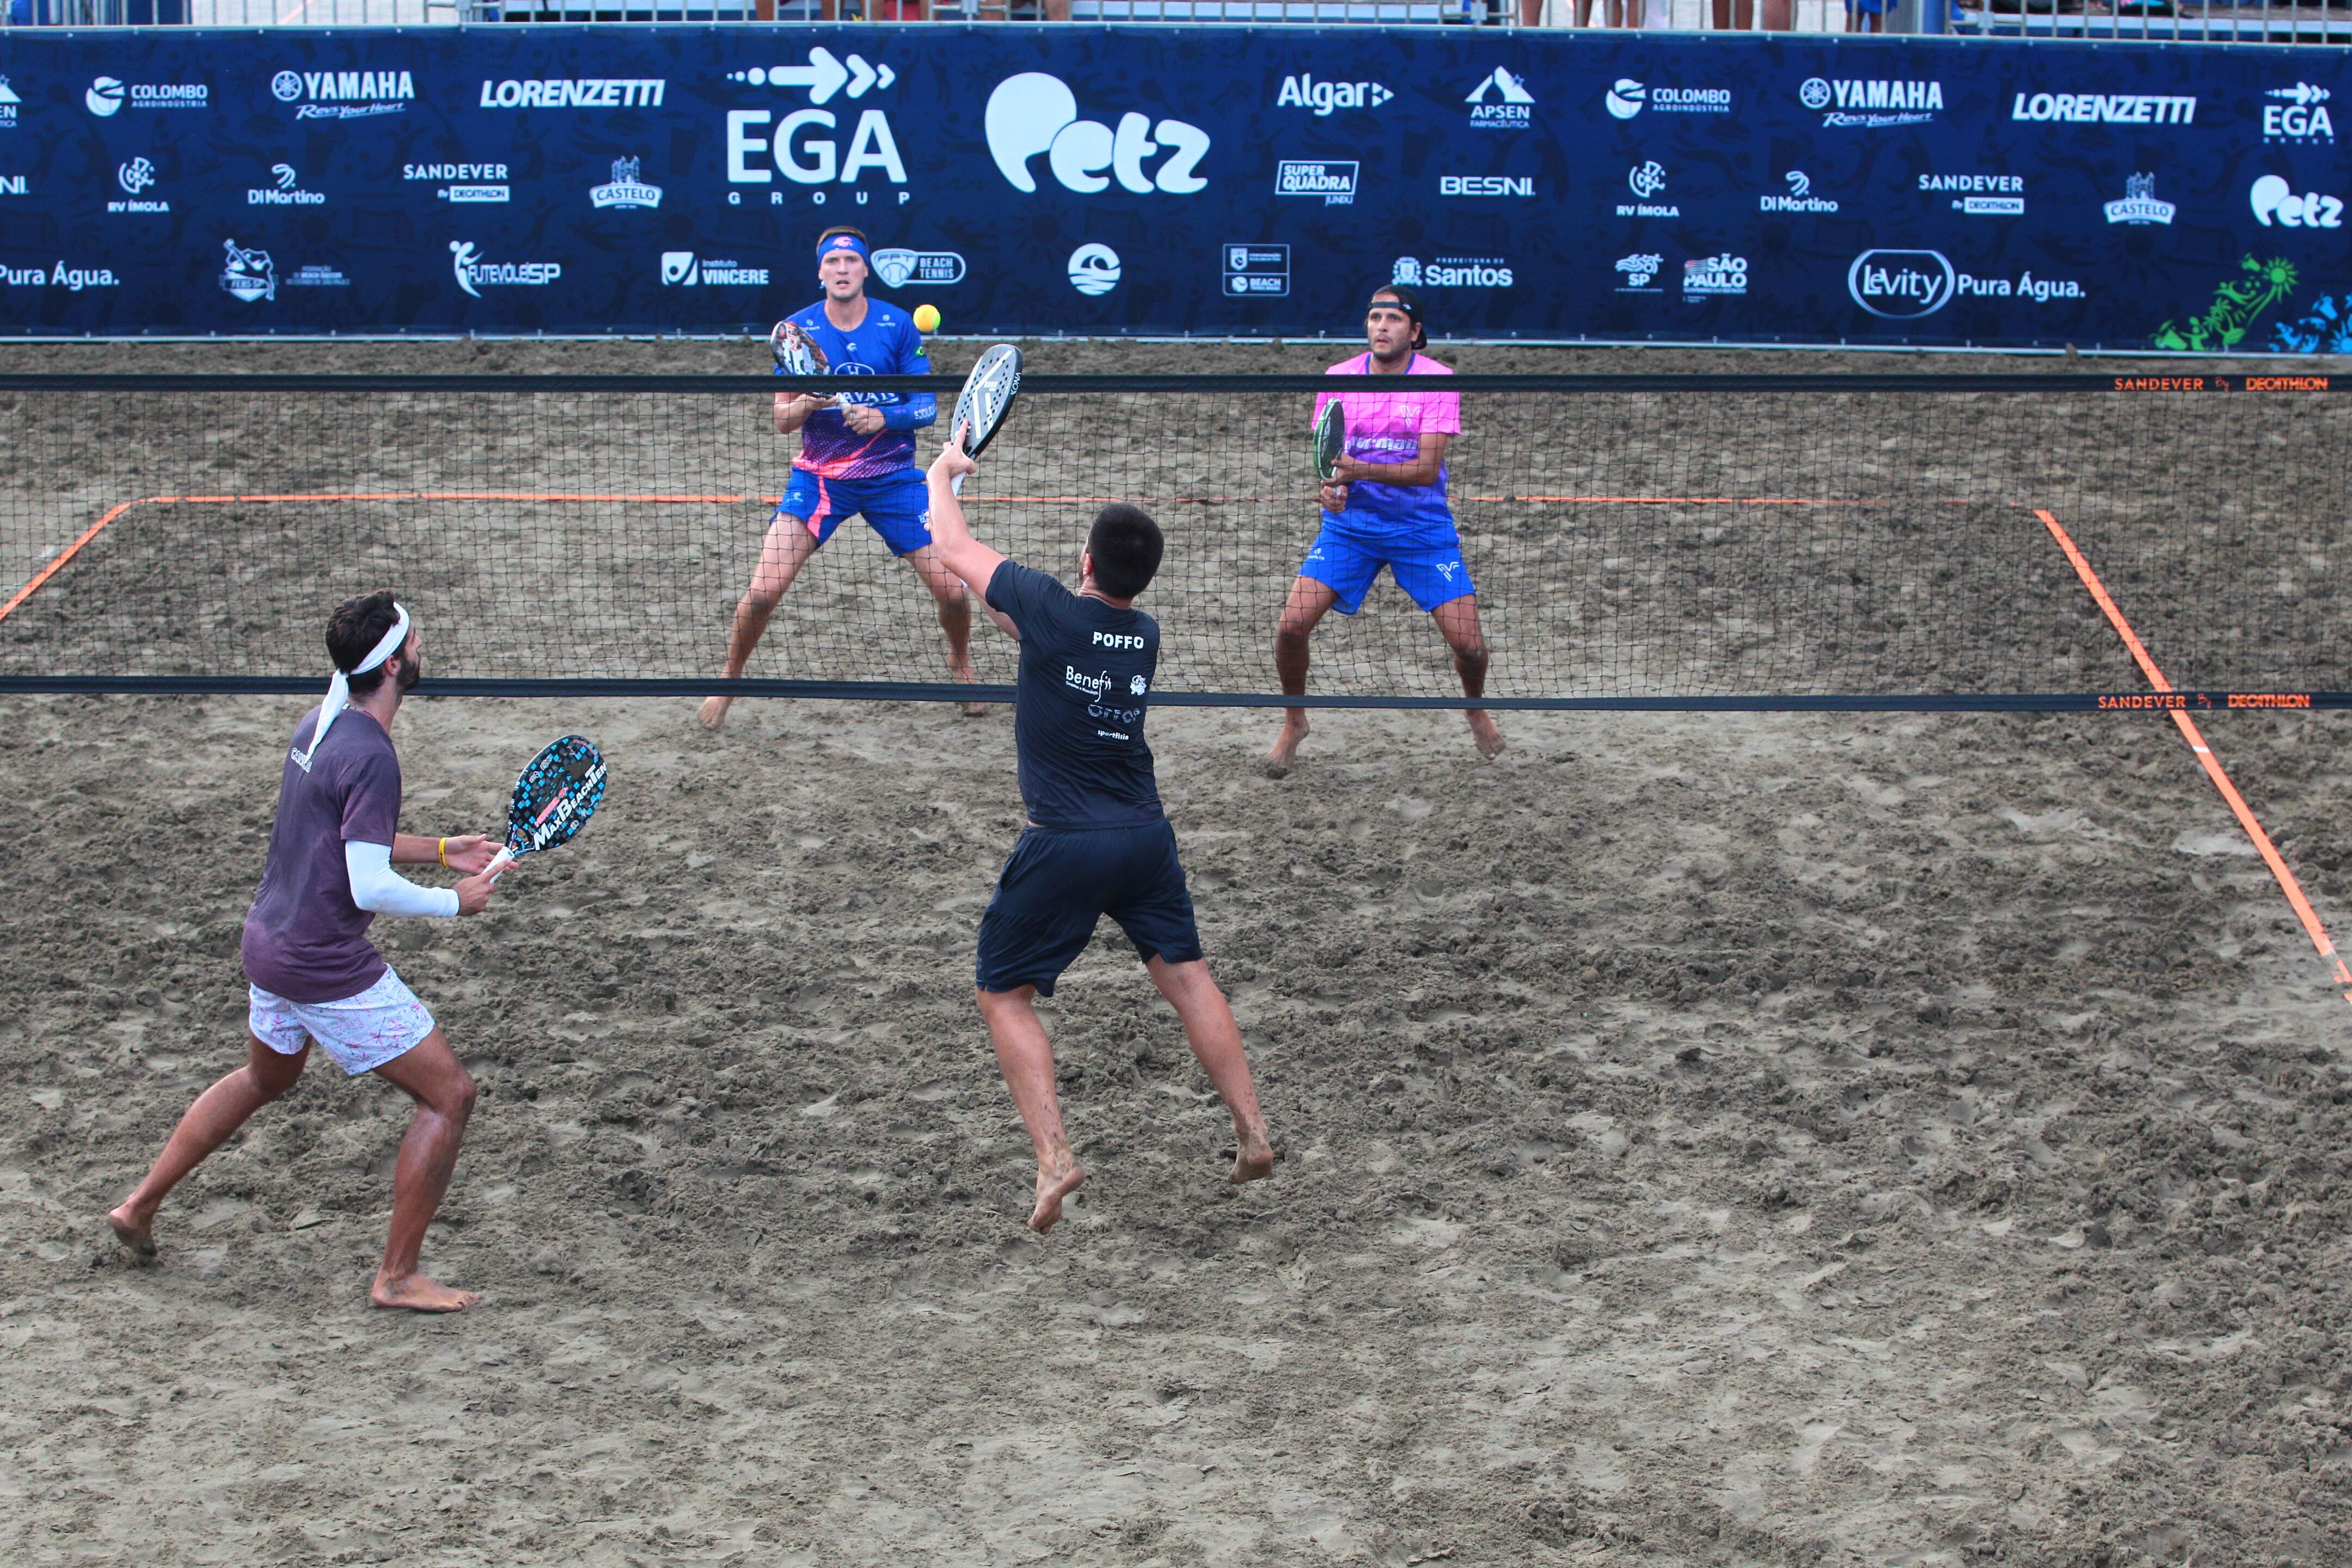 A arena montada na Praia do Gonzaga recebe alguns dos melhores jogadores do beach tennis mundial